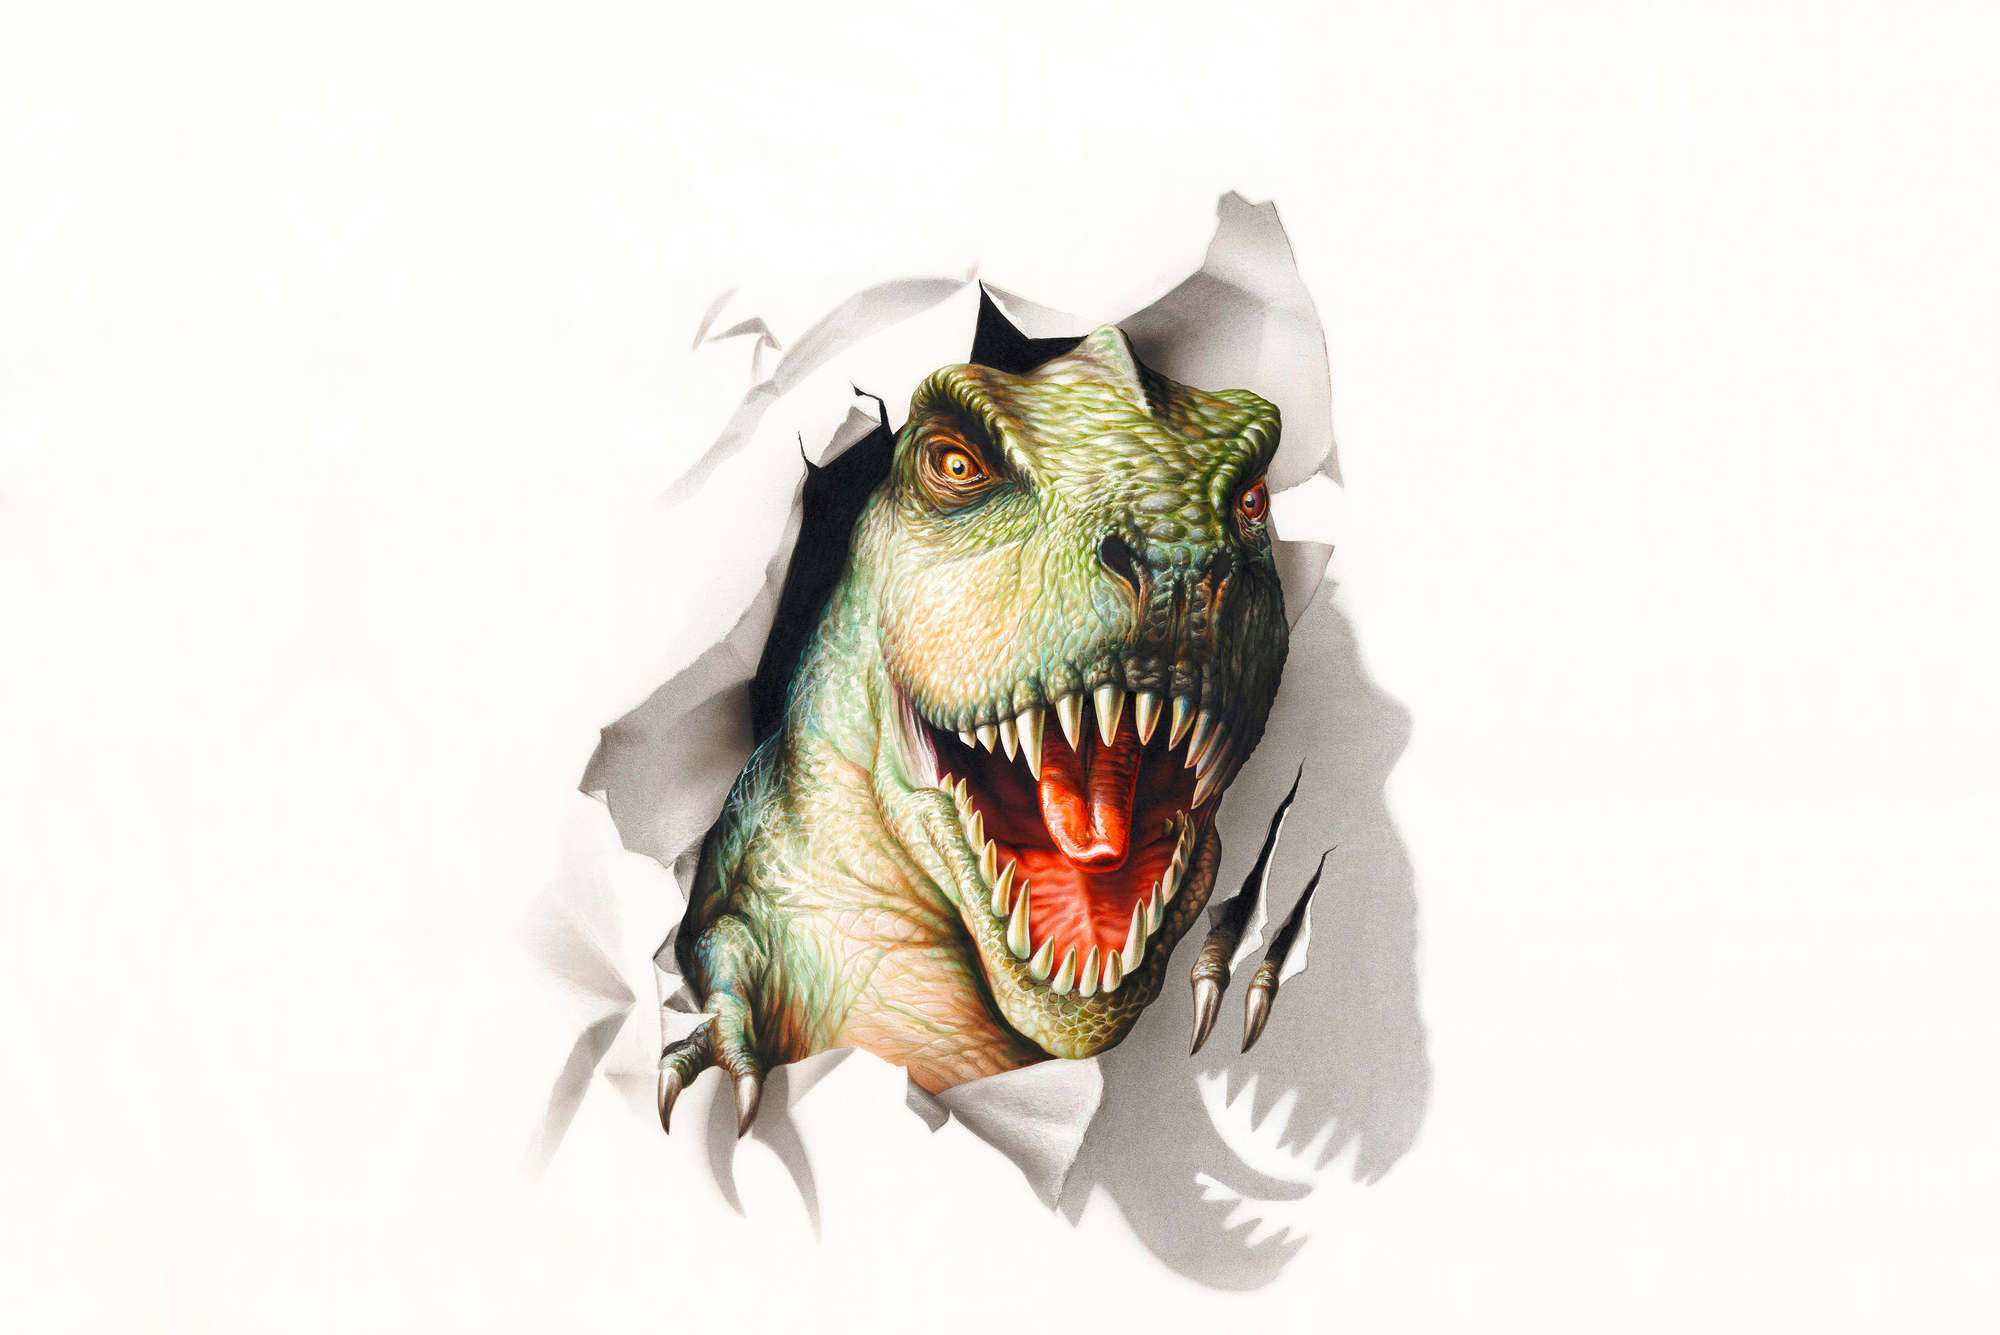             Papel pintado infantil Cabeza de dinosaurio en nácar liso
        